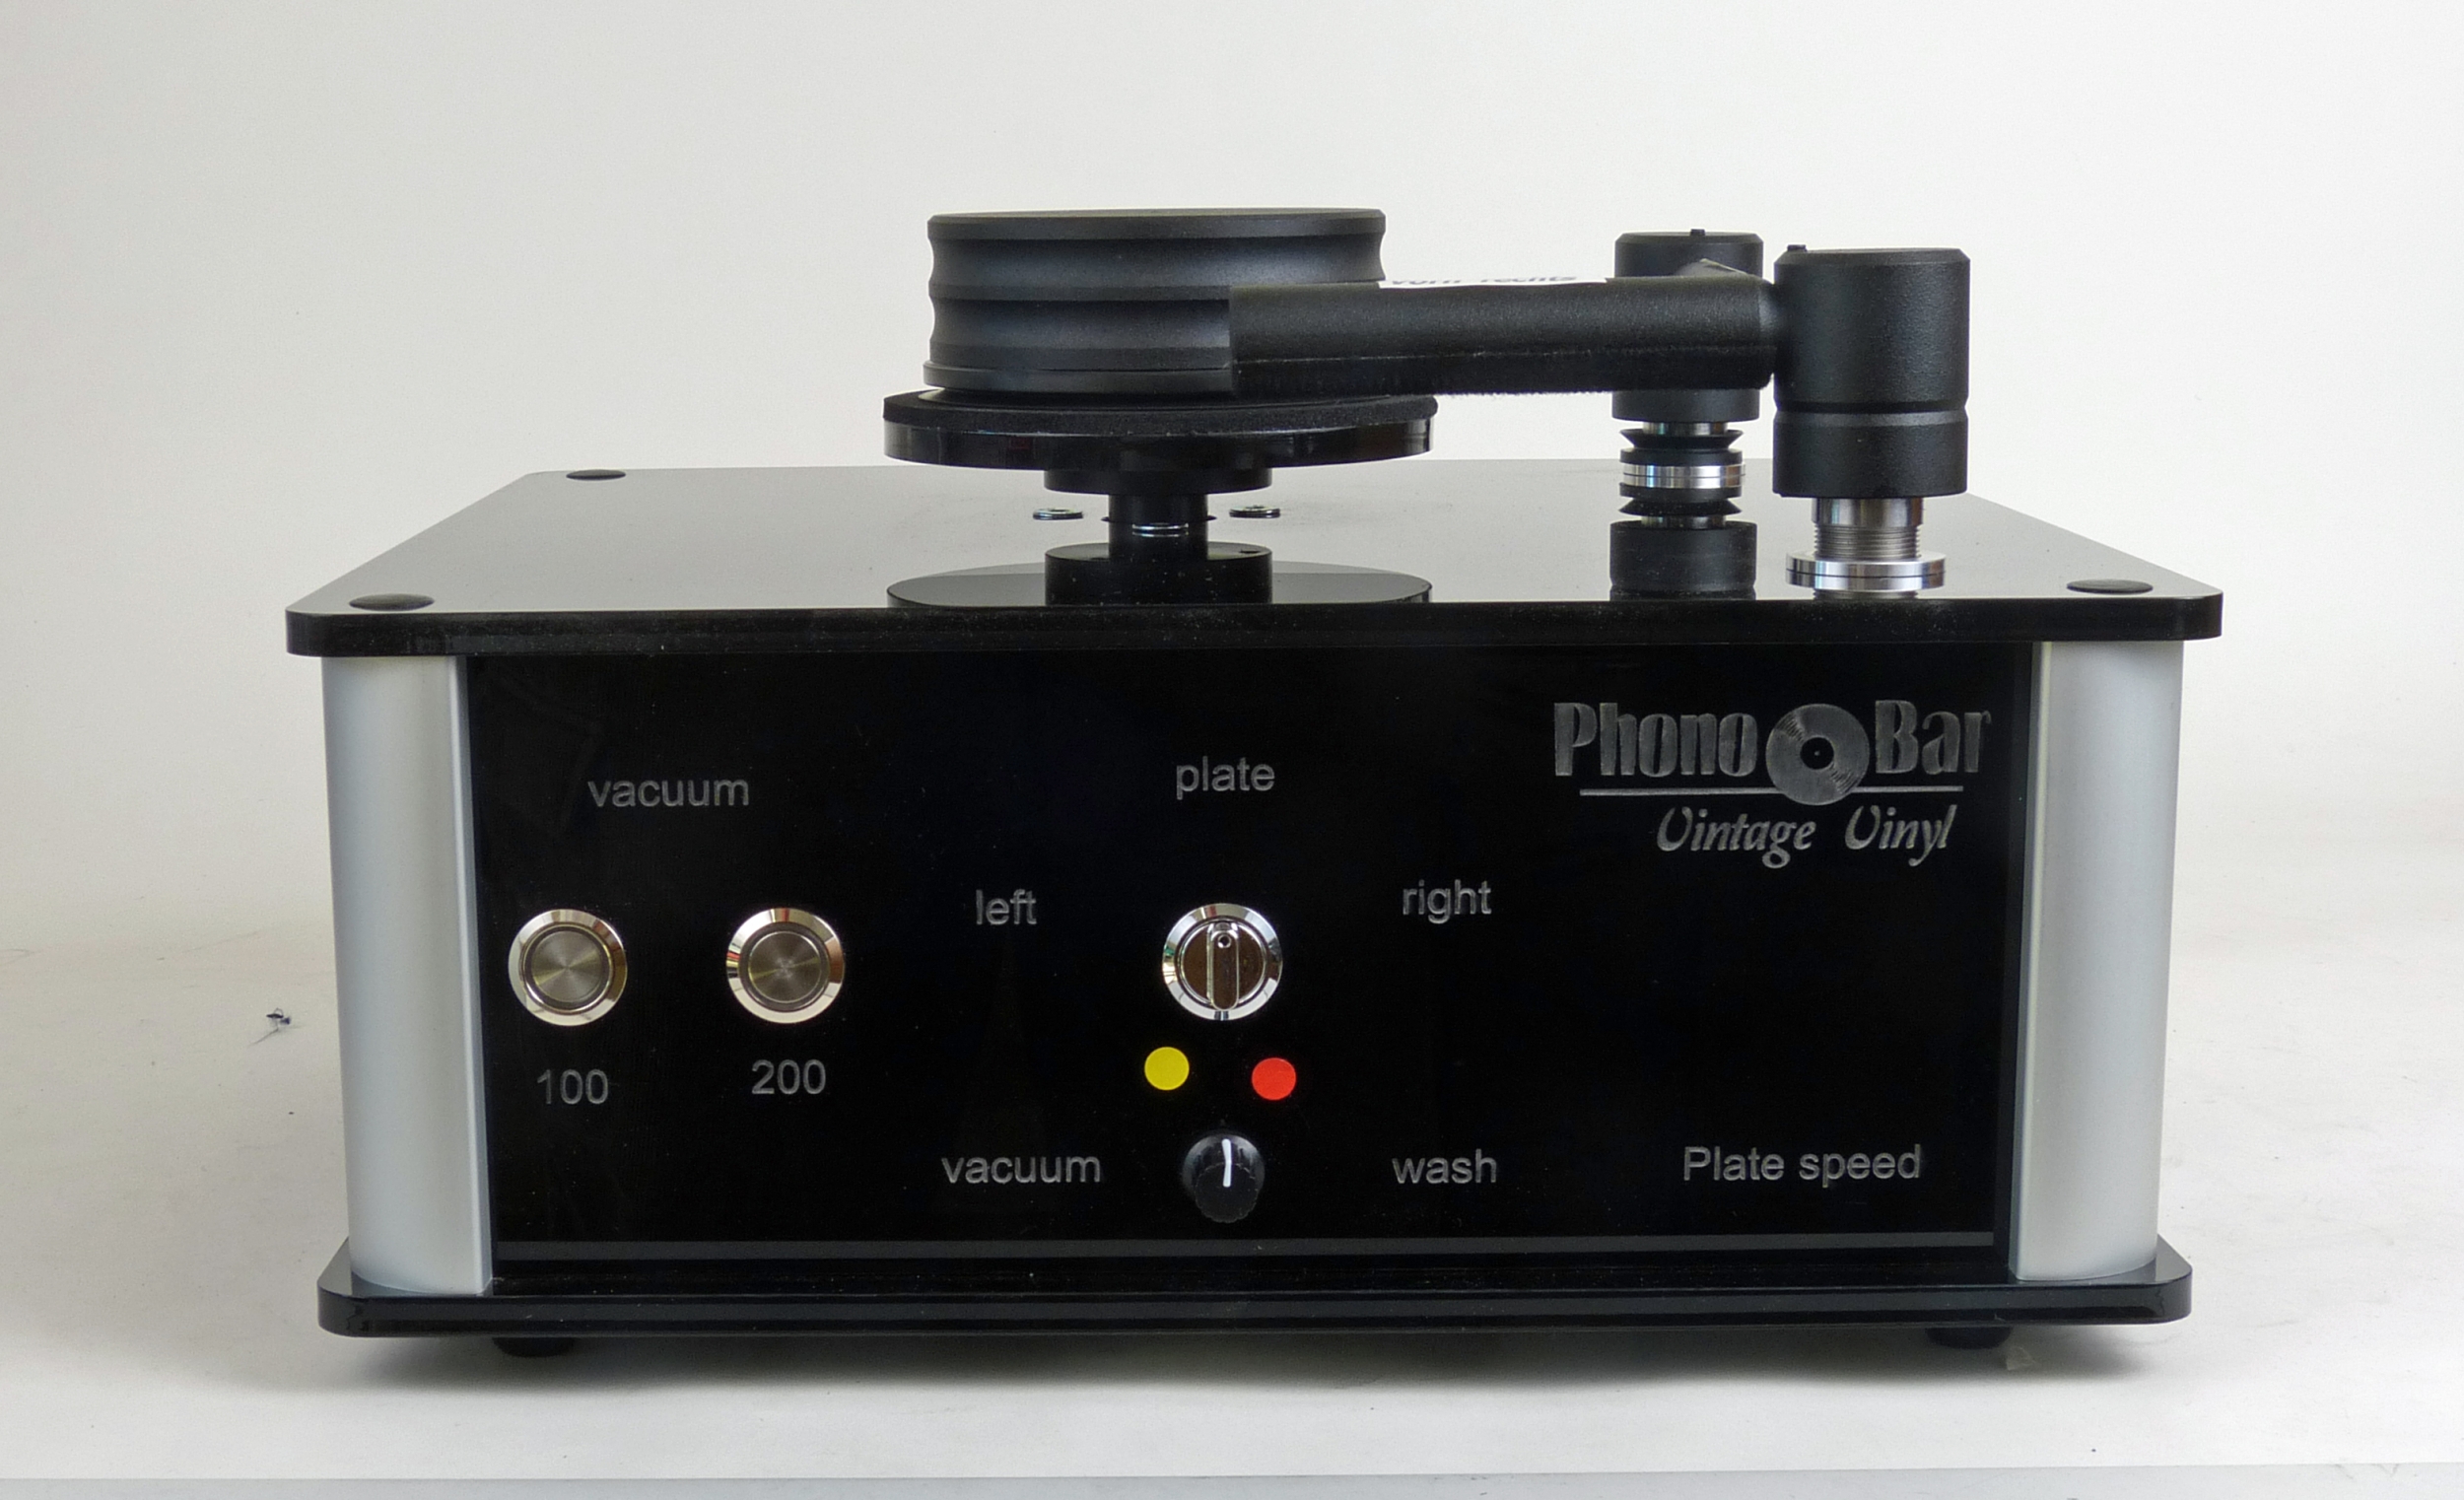 Phonobar Vinyl Cleaner Plattenwaschmaschine, Sonderpreis